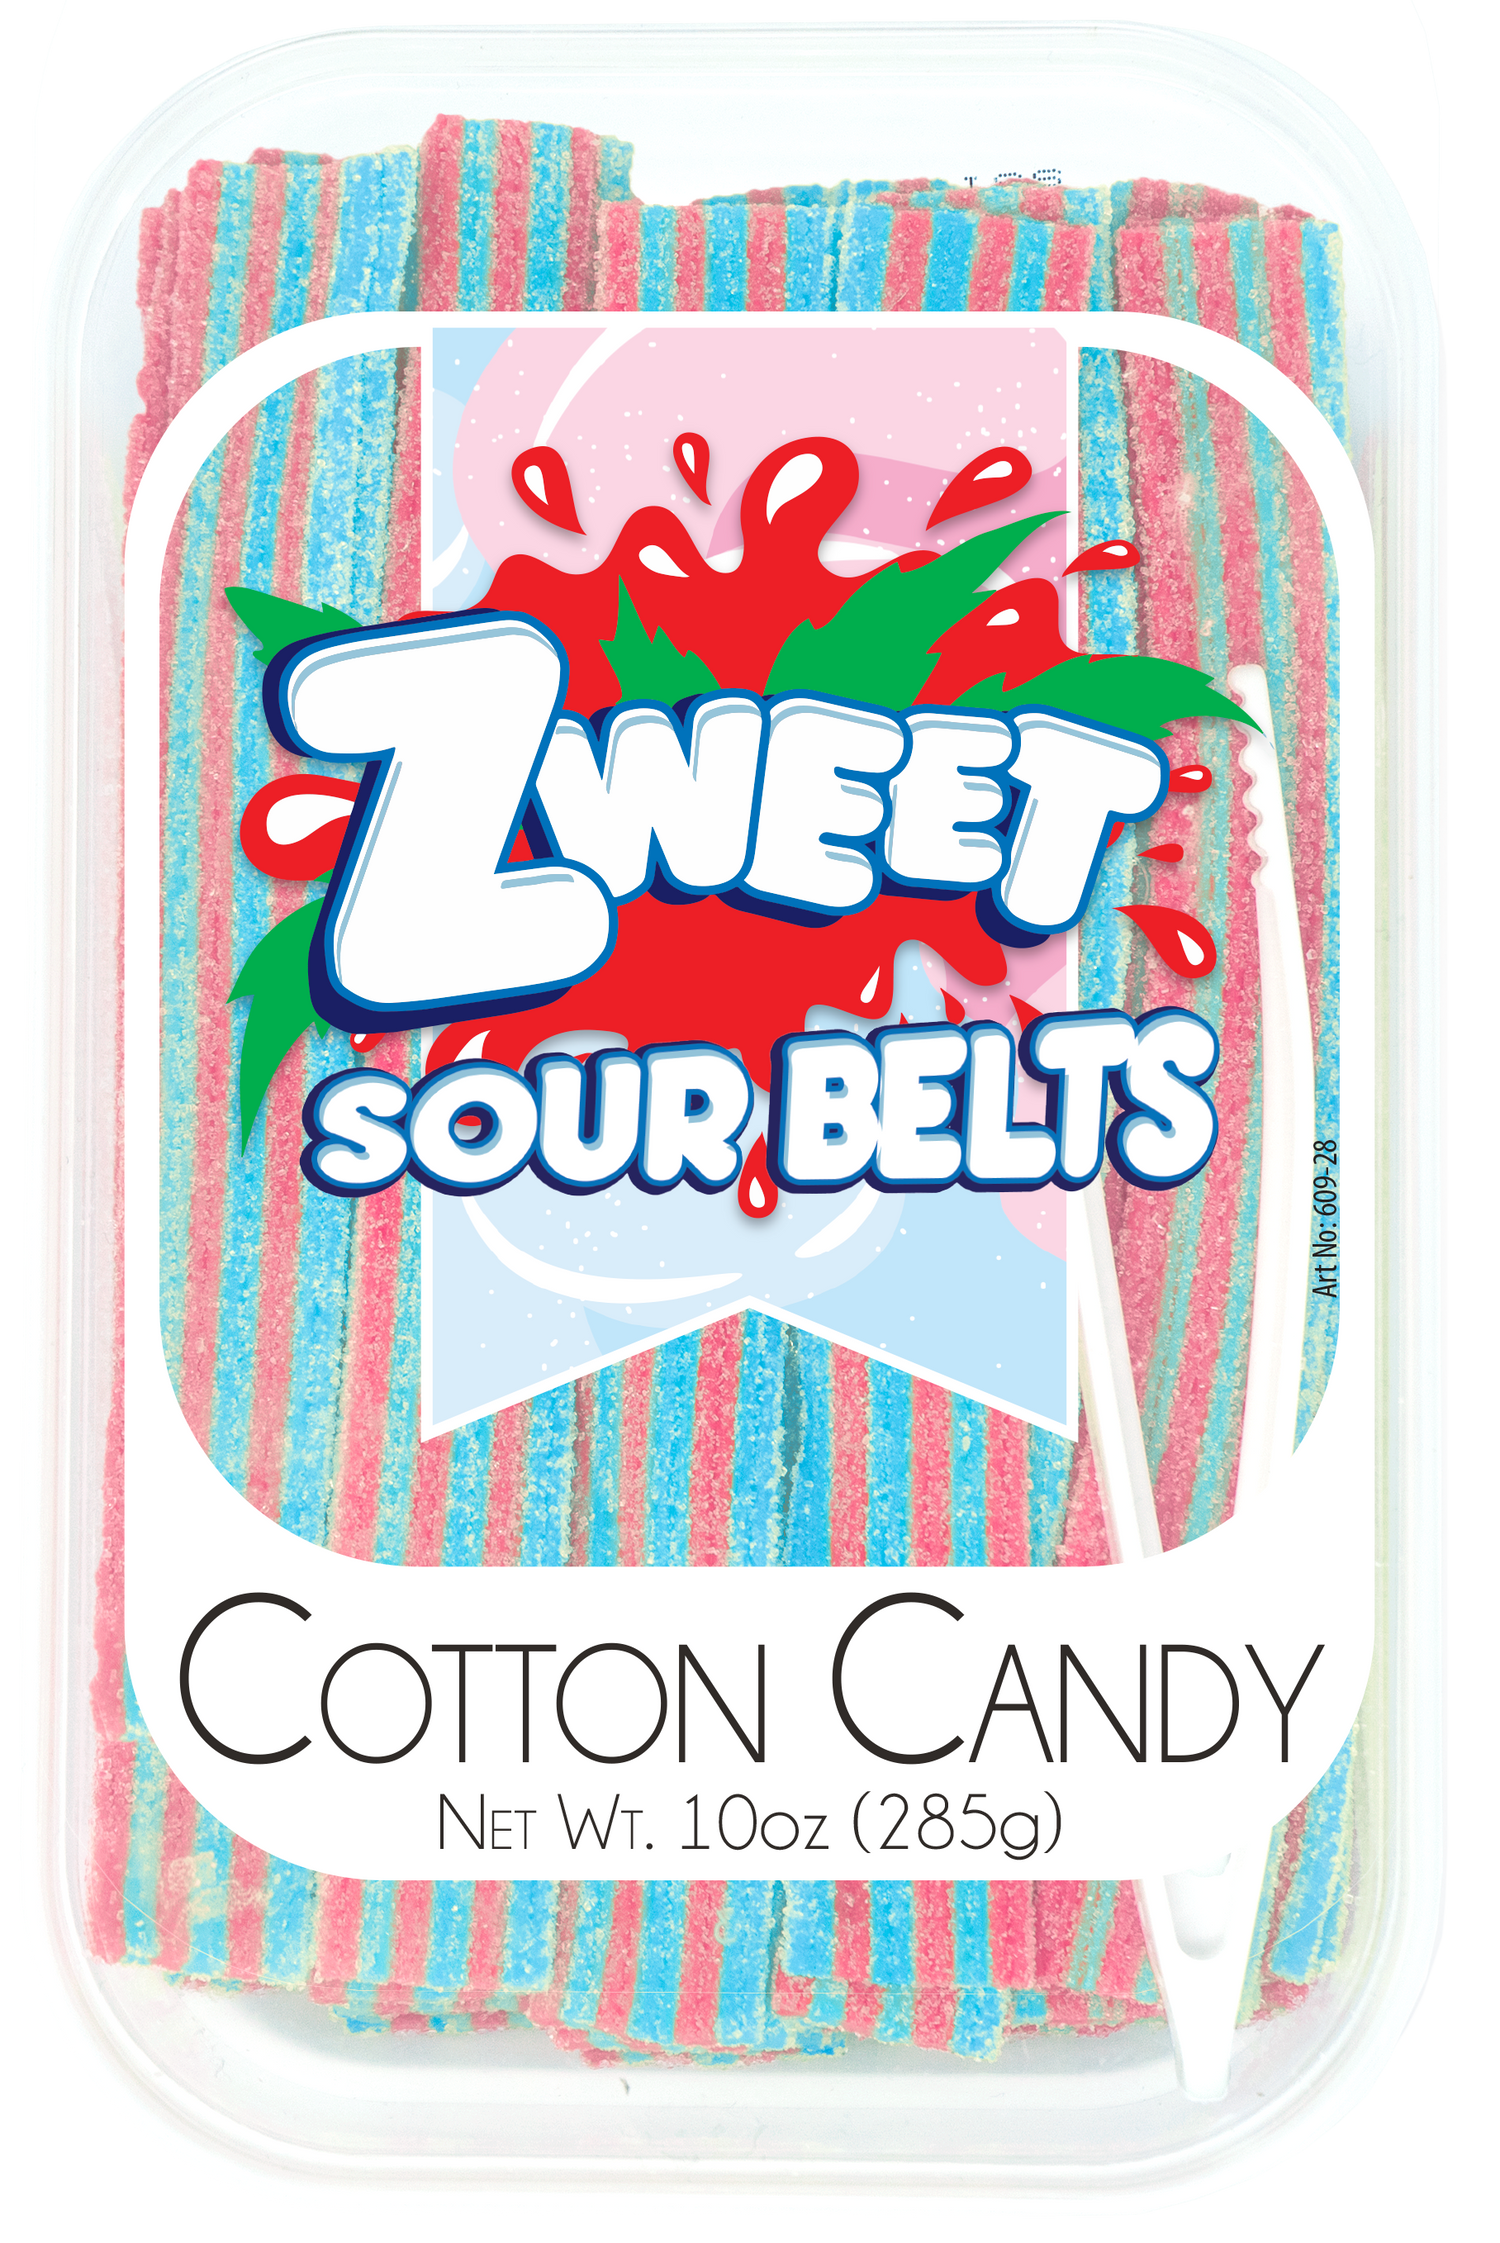 Sour Cotton Candy Belts | 10 oz